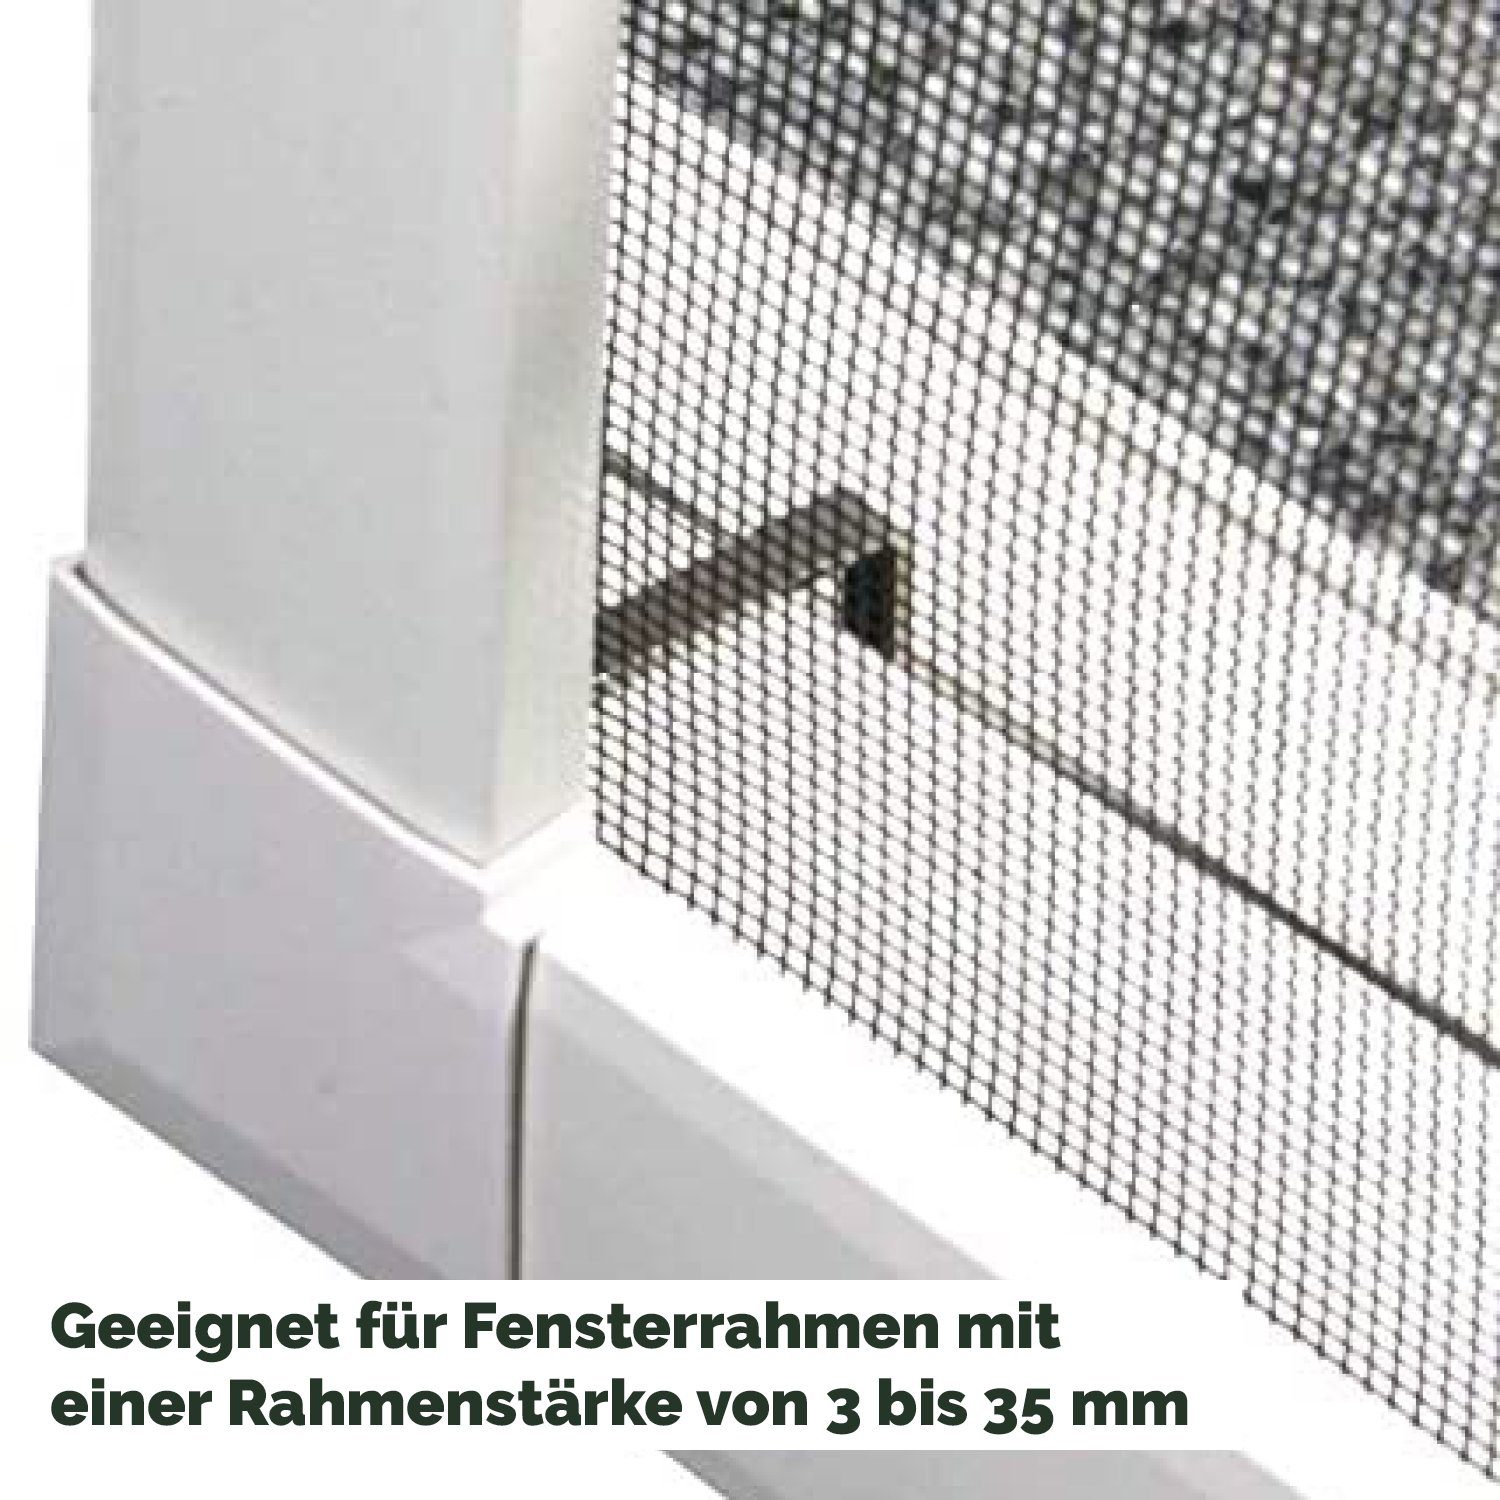 für Fenster premium Insektenschutz Alu Weiß Nematek® System Spannrahmen Nematek Insektenschutz-Fensterrahmen